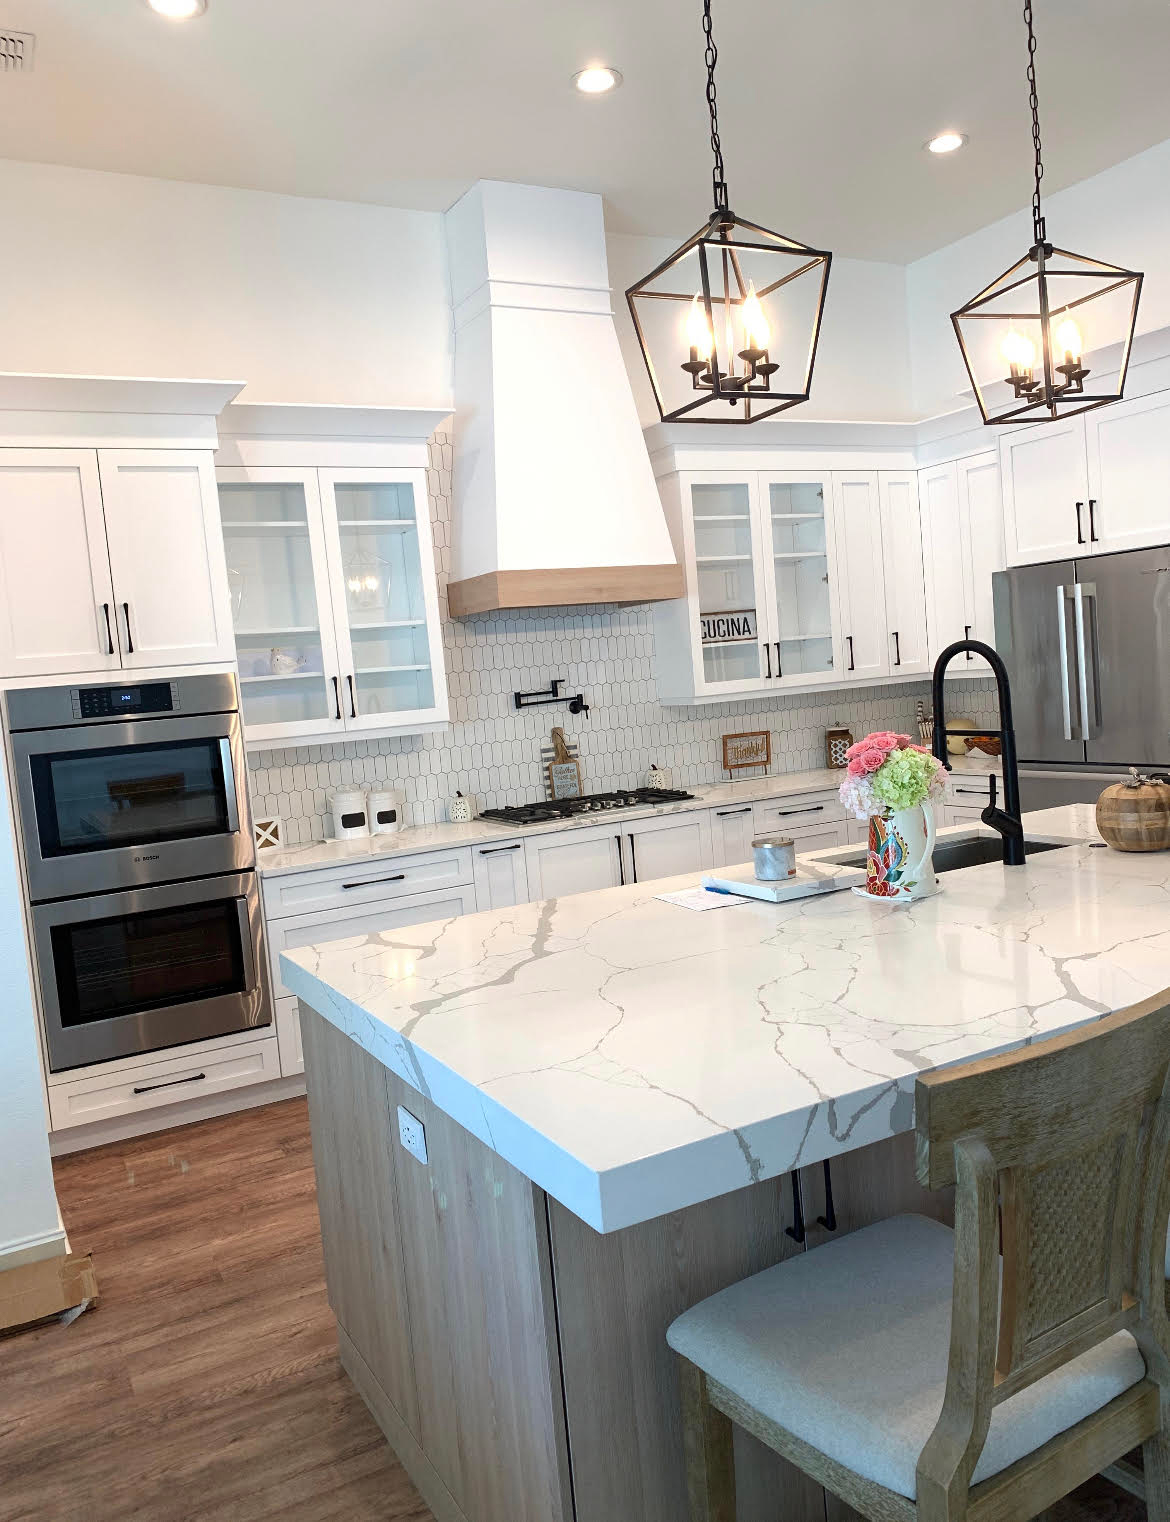 residential full kitchen remodel